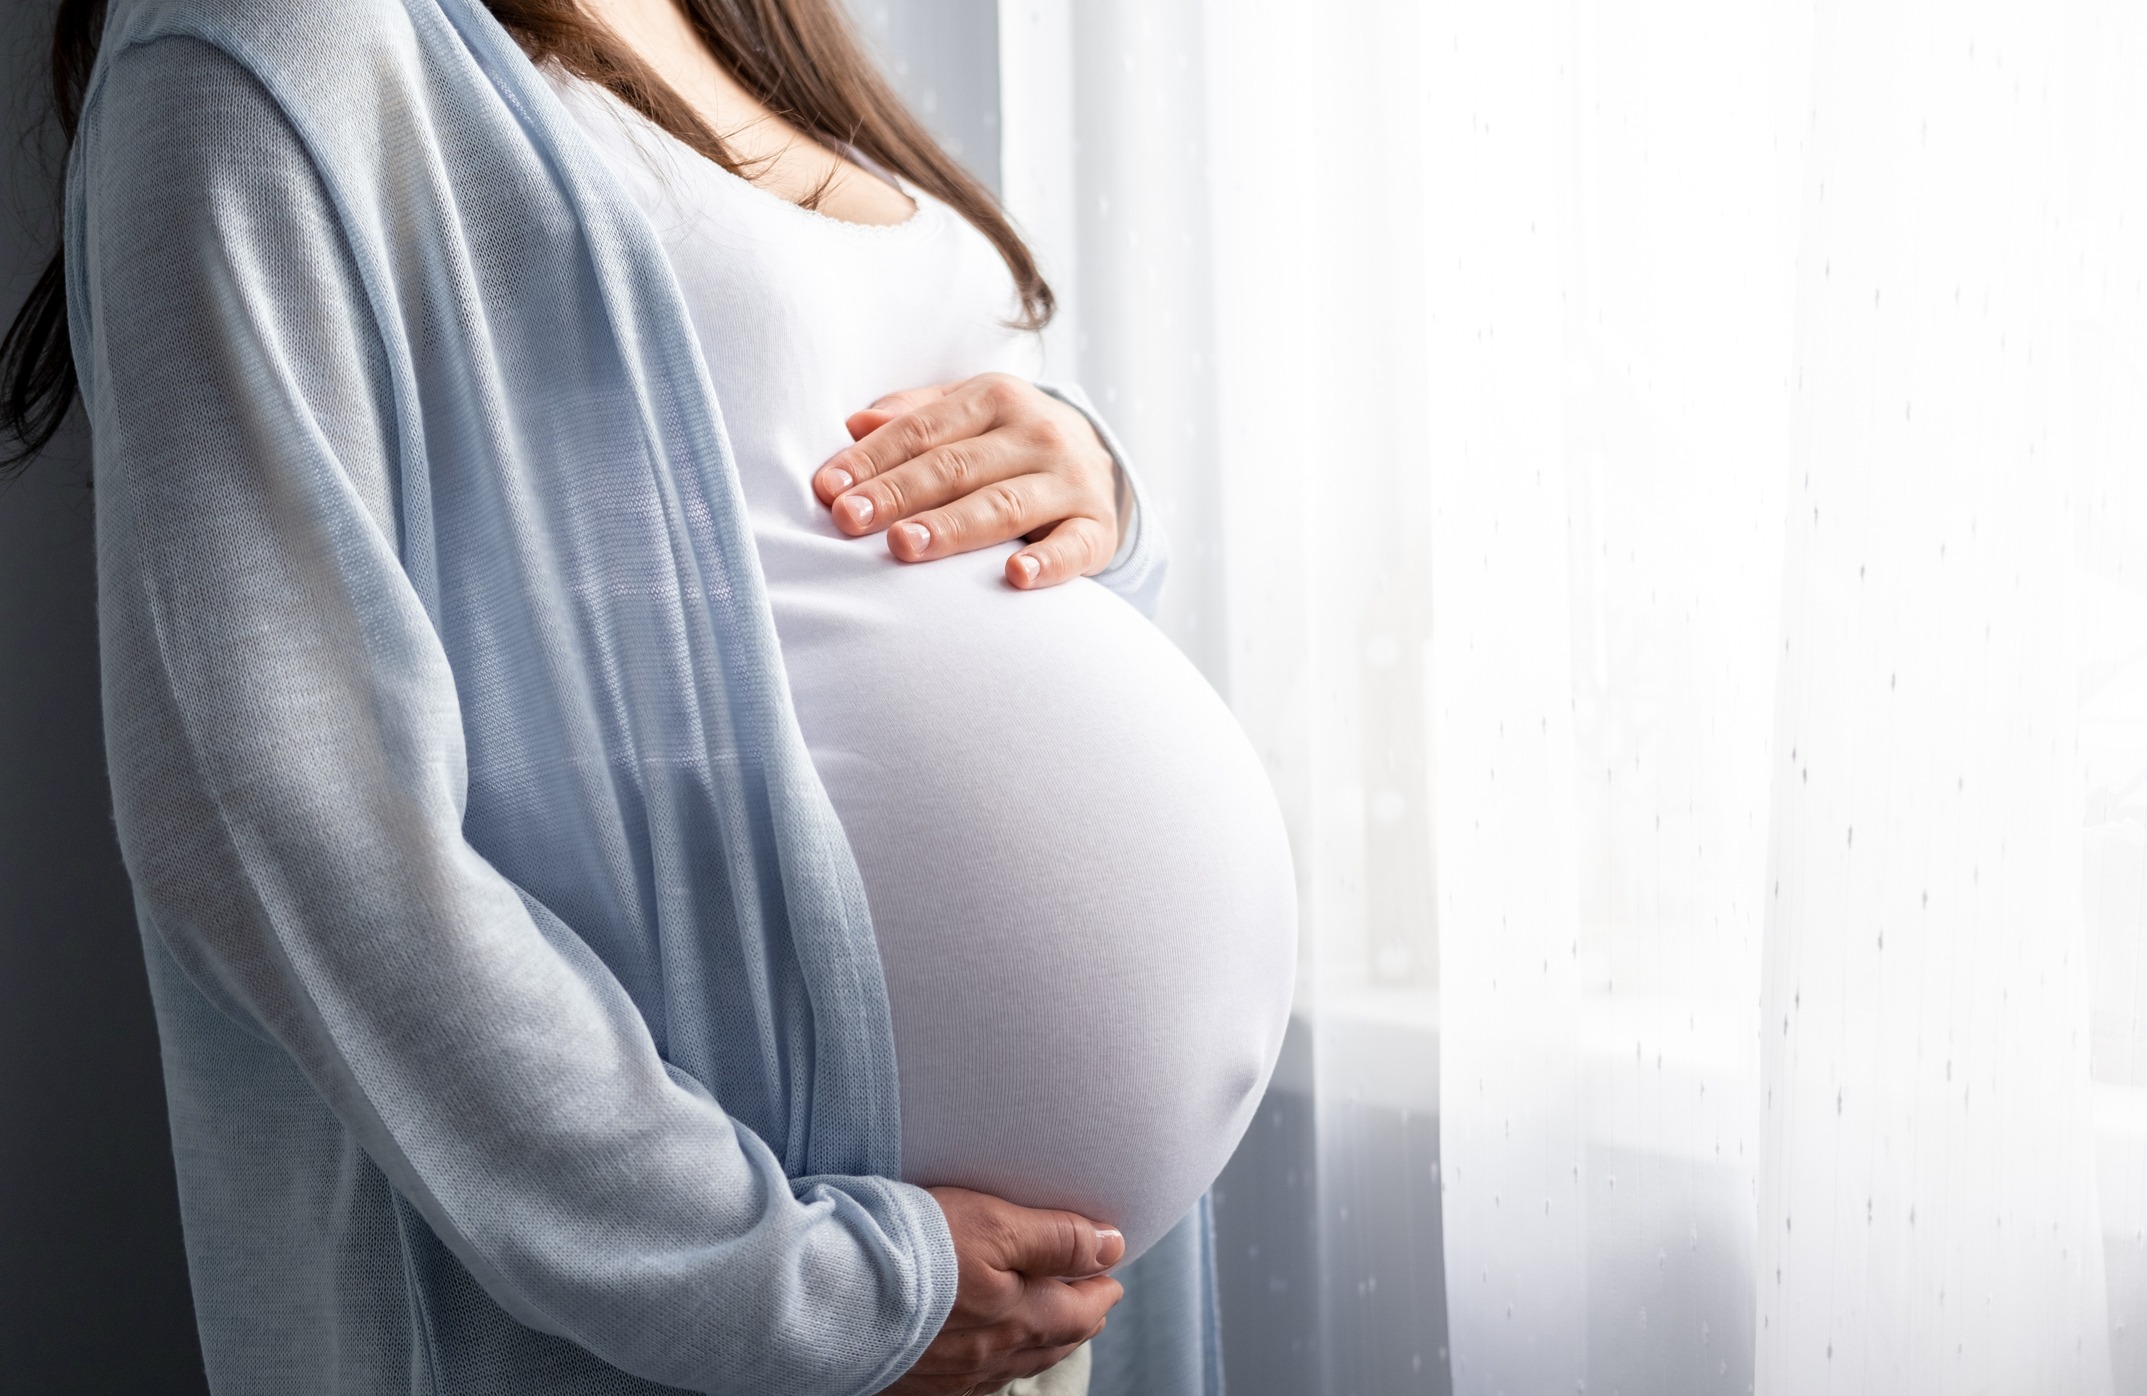 ΗΠΑ: 32χρονη με δύο μήτρες, γέννησε δύο μωρά μέσα σε δύο ημέρες